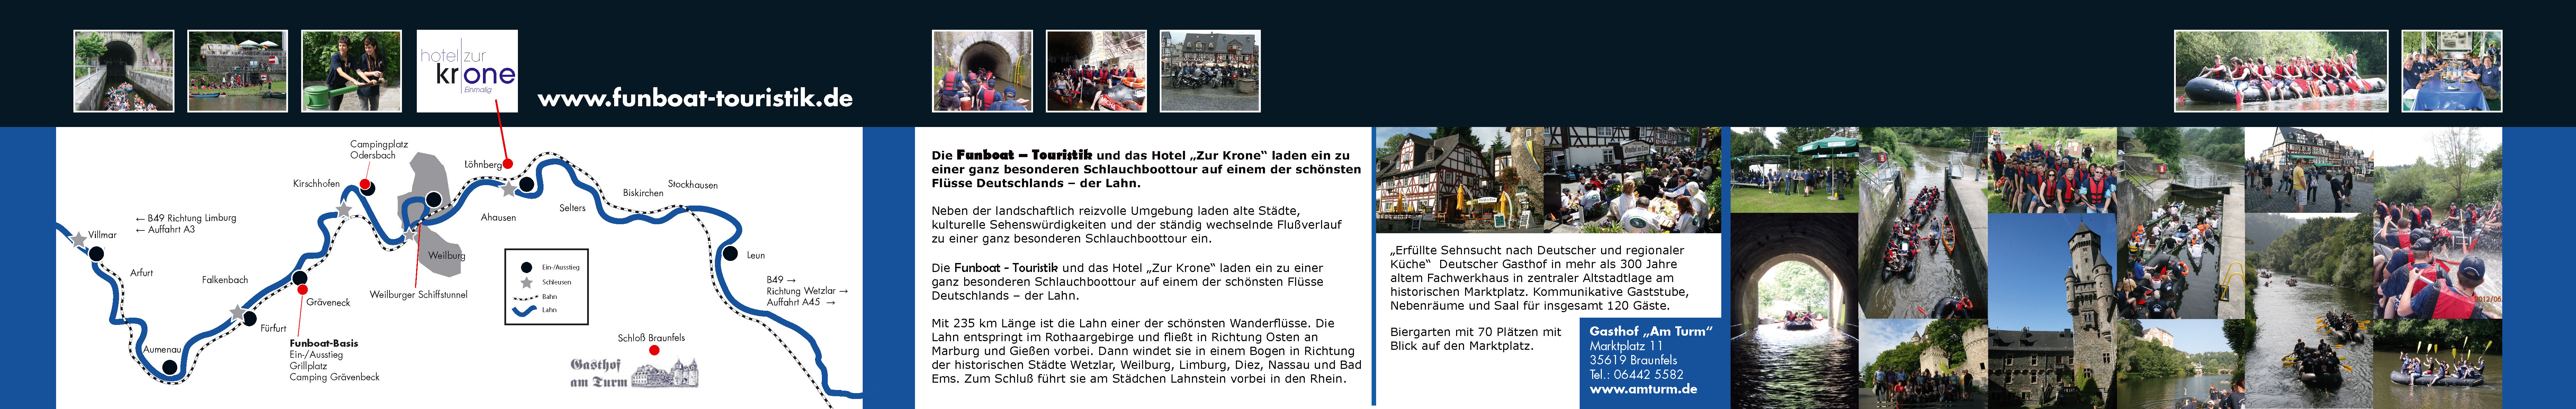 Lahn Hotel zur Krone 2015 02 05 Druckabgabe 2